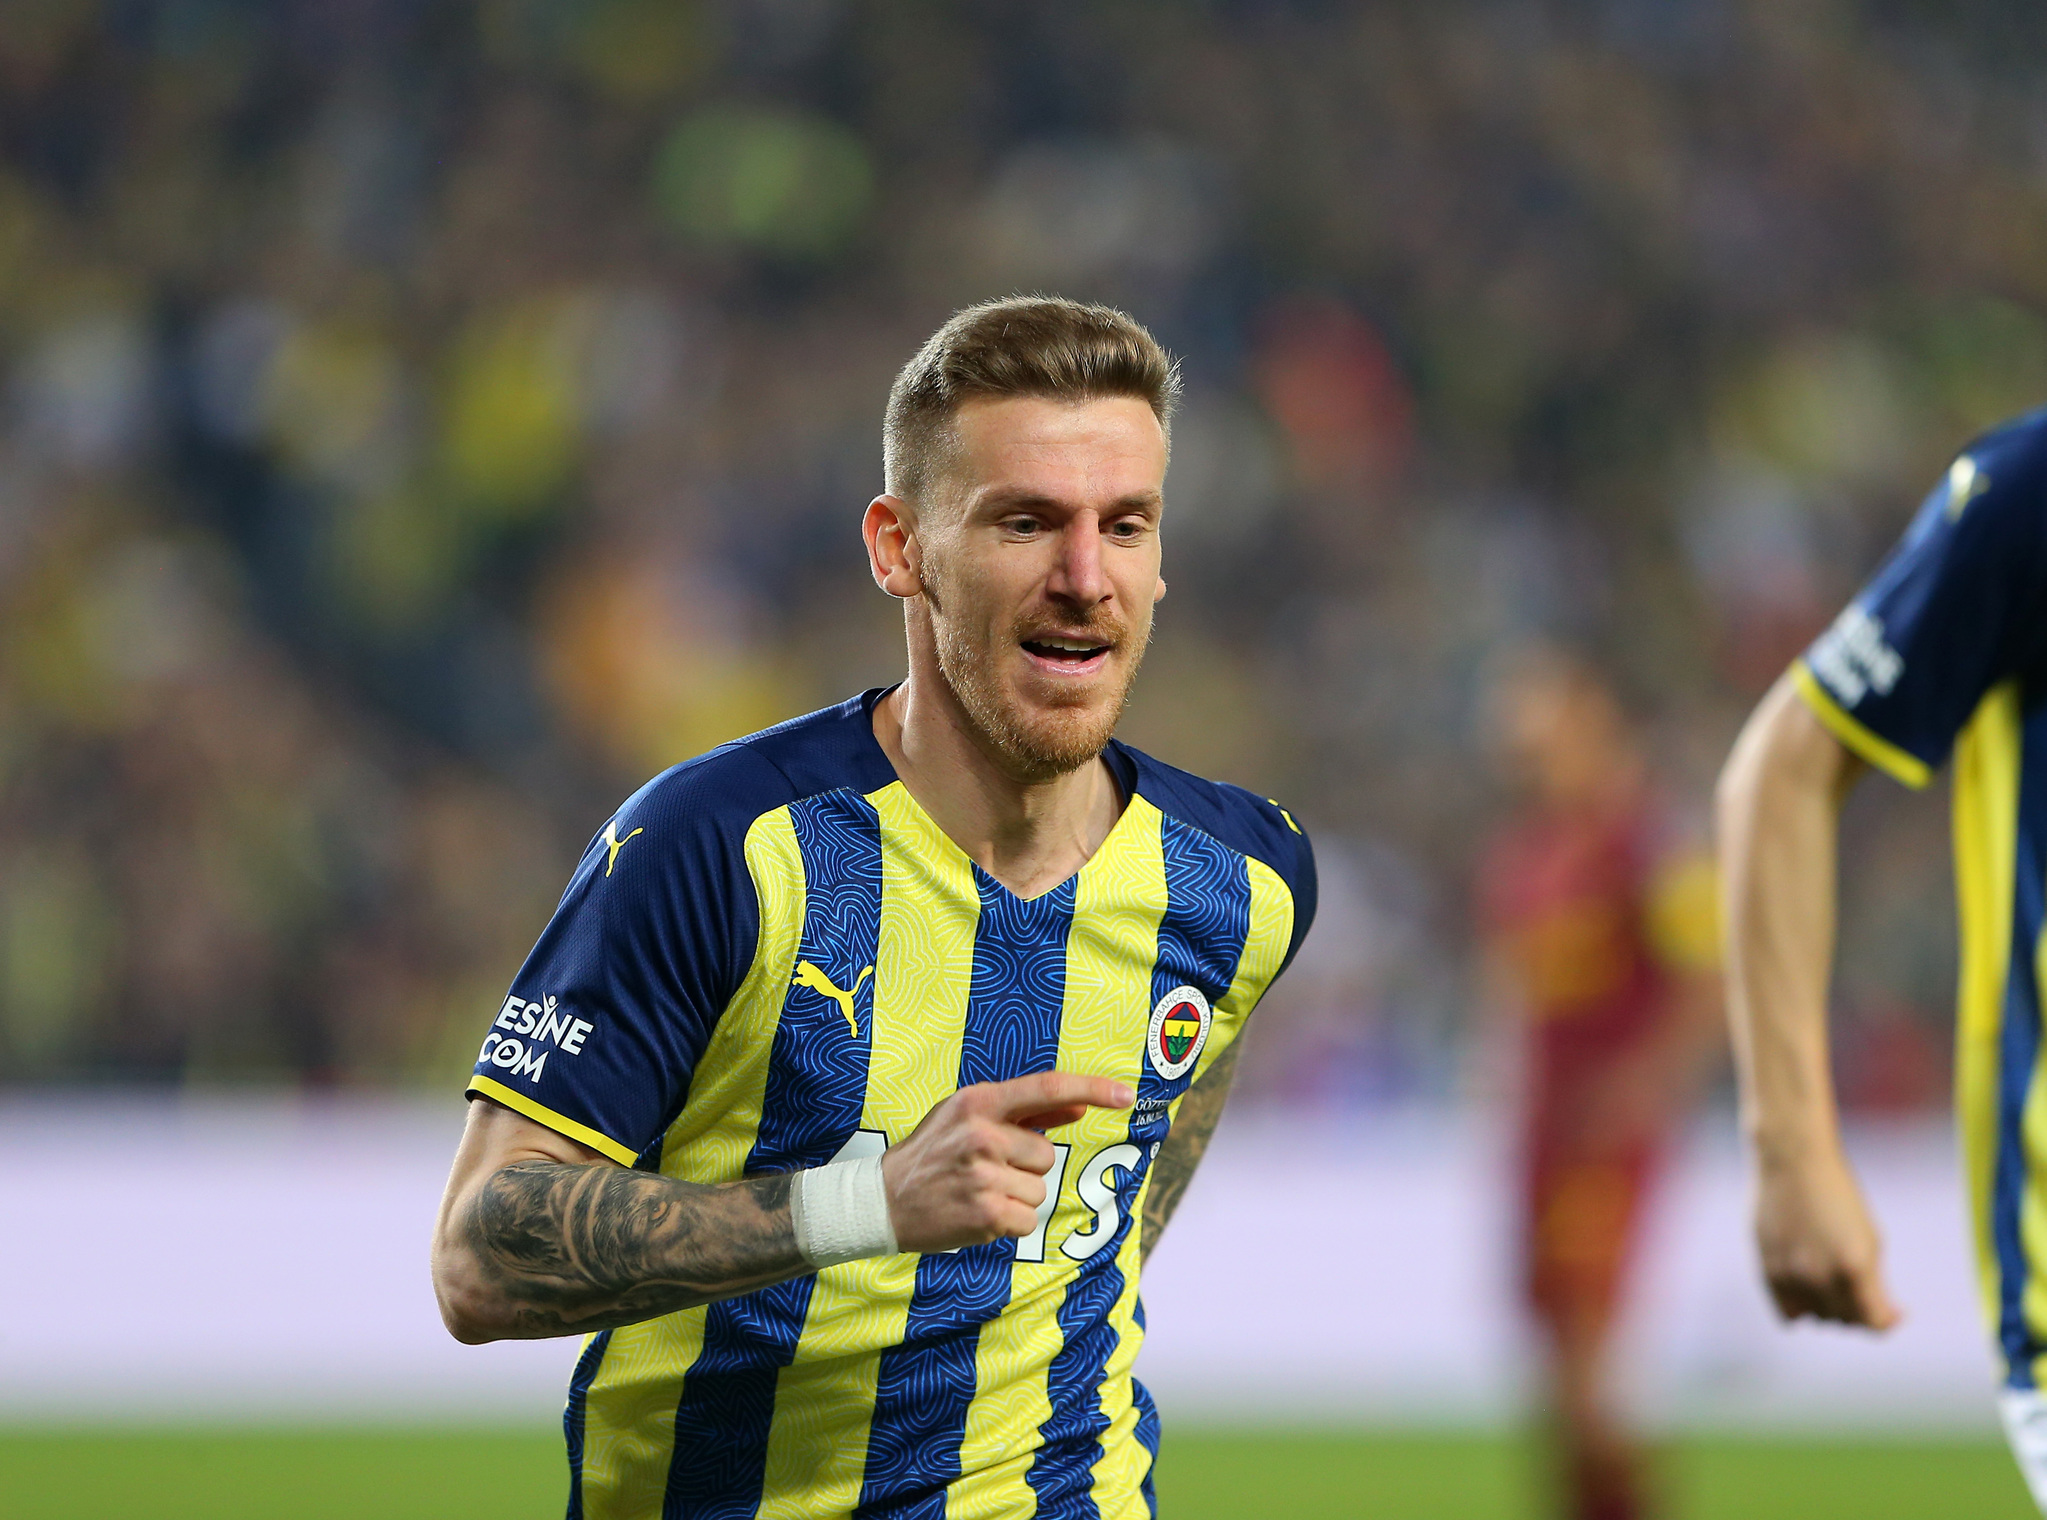 Fenerbahçe ve Galatasaray’ın zirve yarışında damga vurdular! O istatistikte...